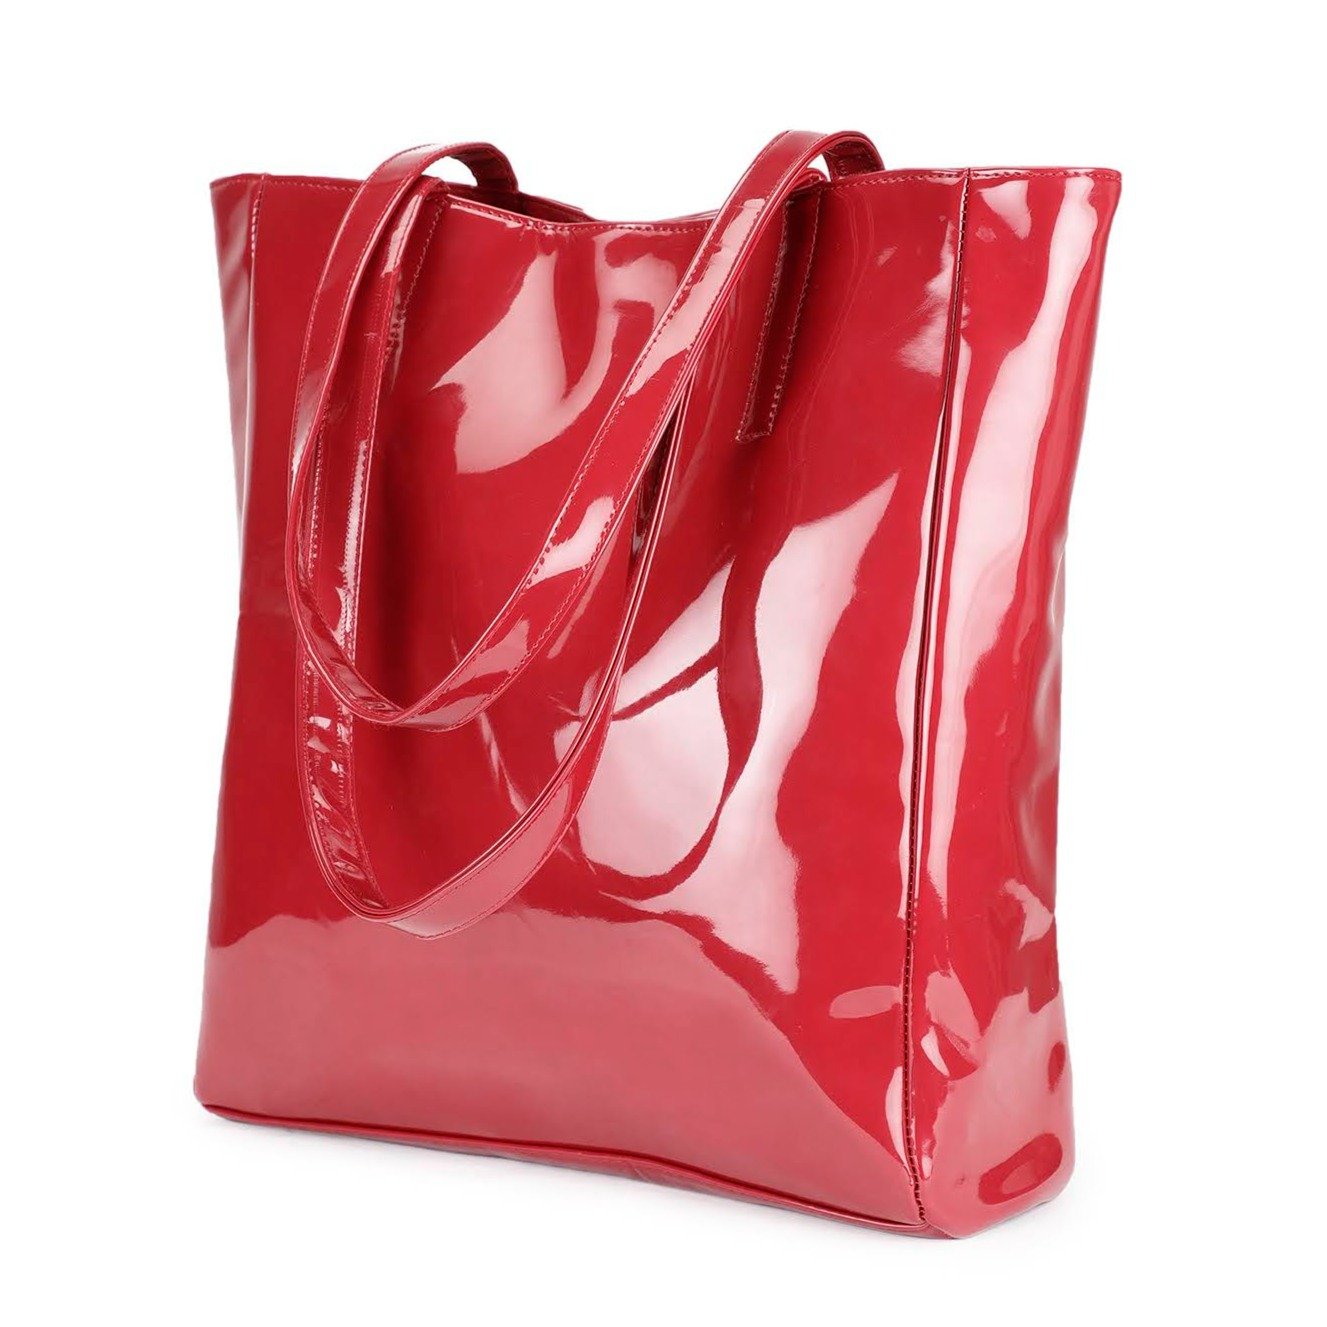 Chic Tote Handbag - Oversized, Cherry Red-Book Bargain Buy